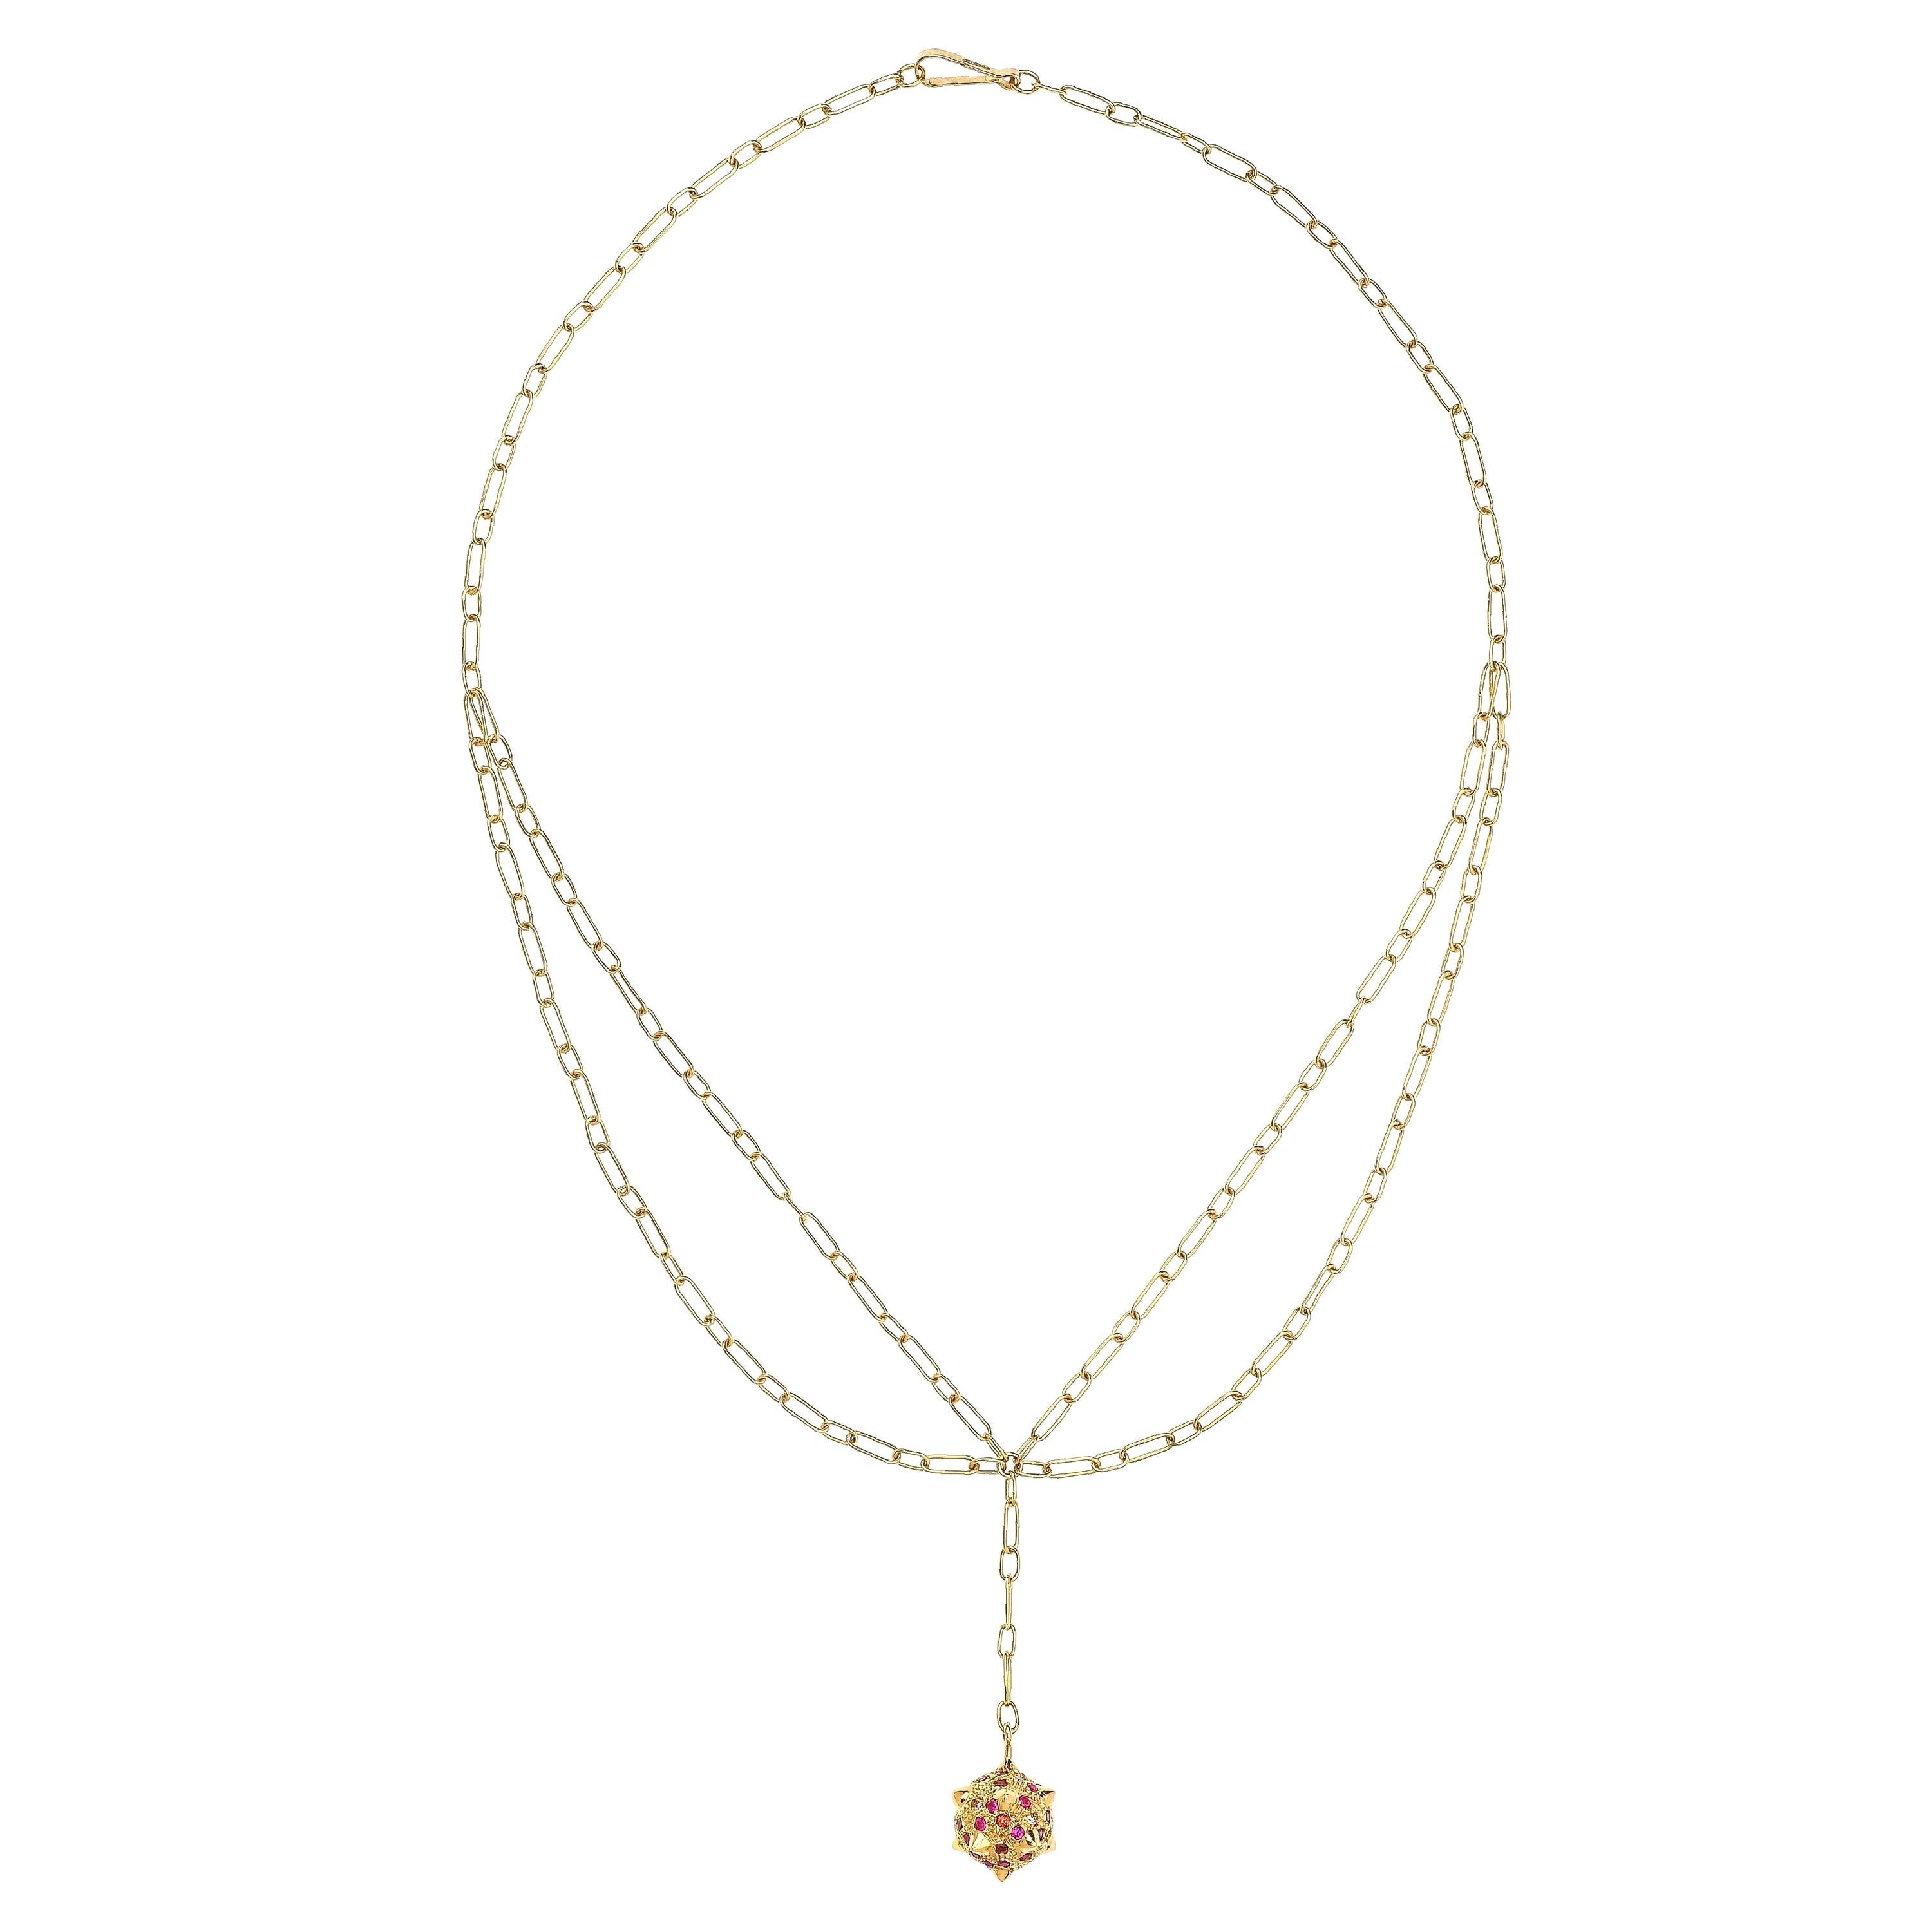 Zeitgenössische 18k Gold Spiked Sphere Kette Halskette mit Diamanten, Rubinen Granaten